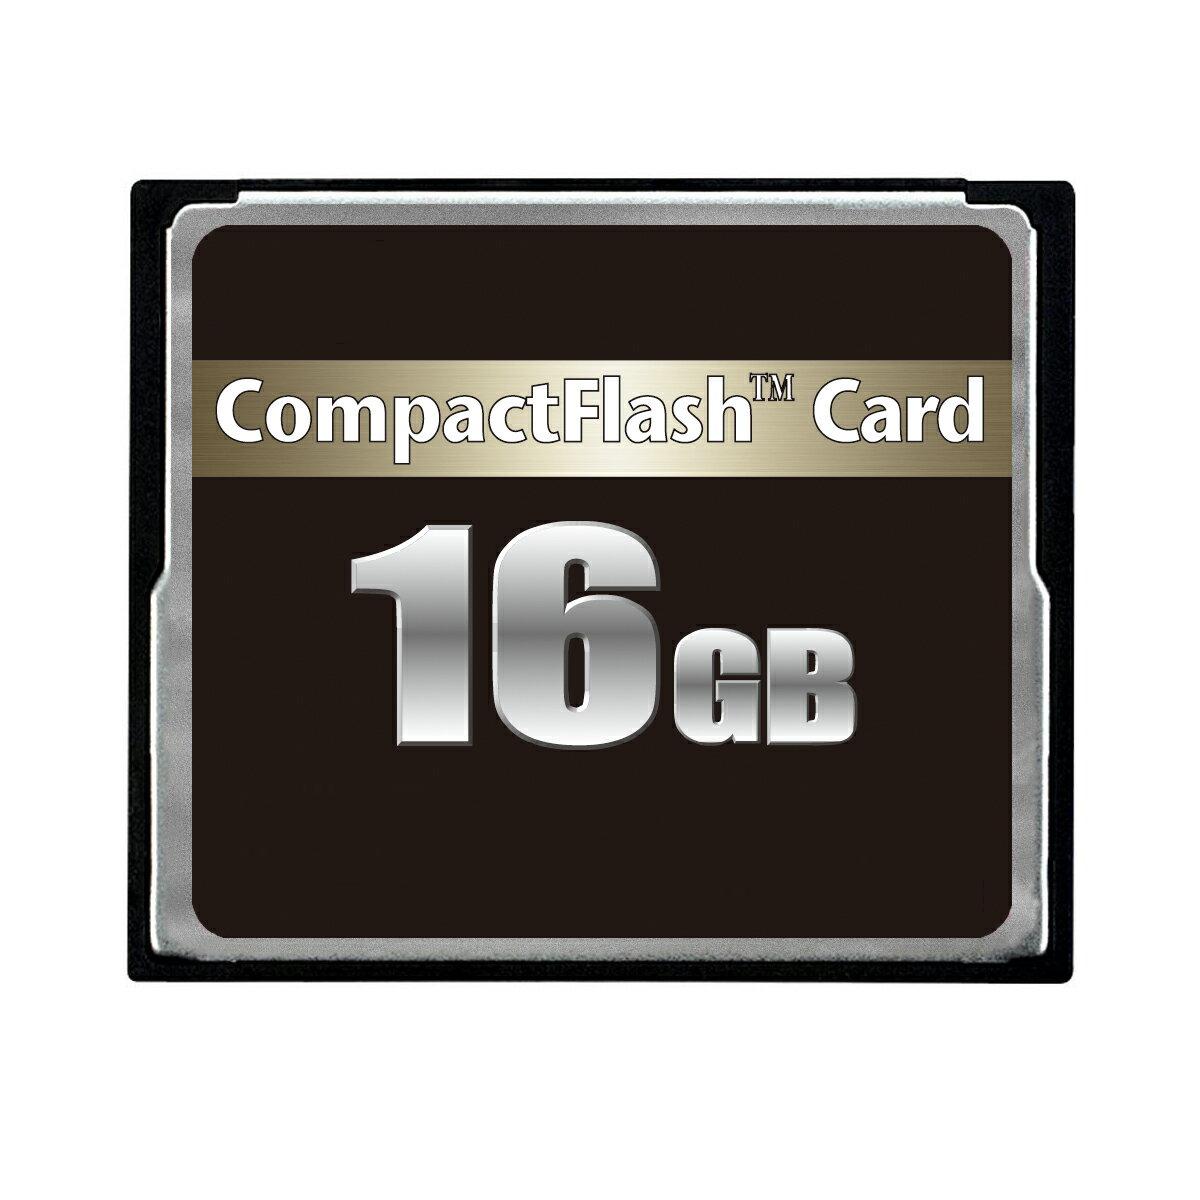 型番MFCF16G233XJP3 JANコード4984279652251 規格 コンパクトフラッシュ 容量16GB 転送規格UDMA7 TypeType1 サイズ 36.4mmx42.8mmx3.3mm *印字が画像と異なる場合がございます。